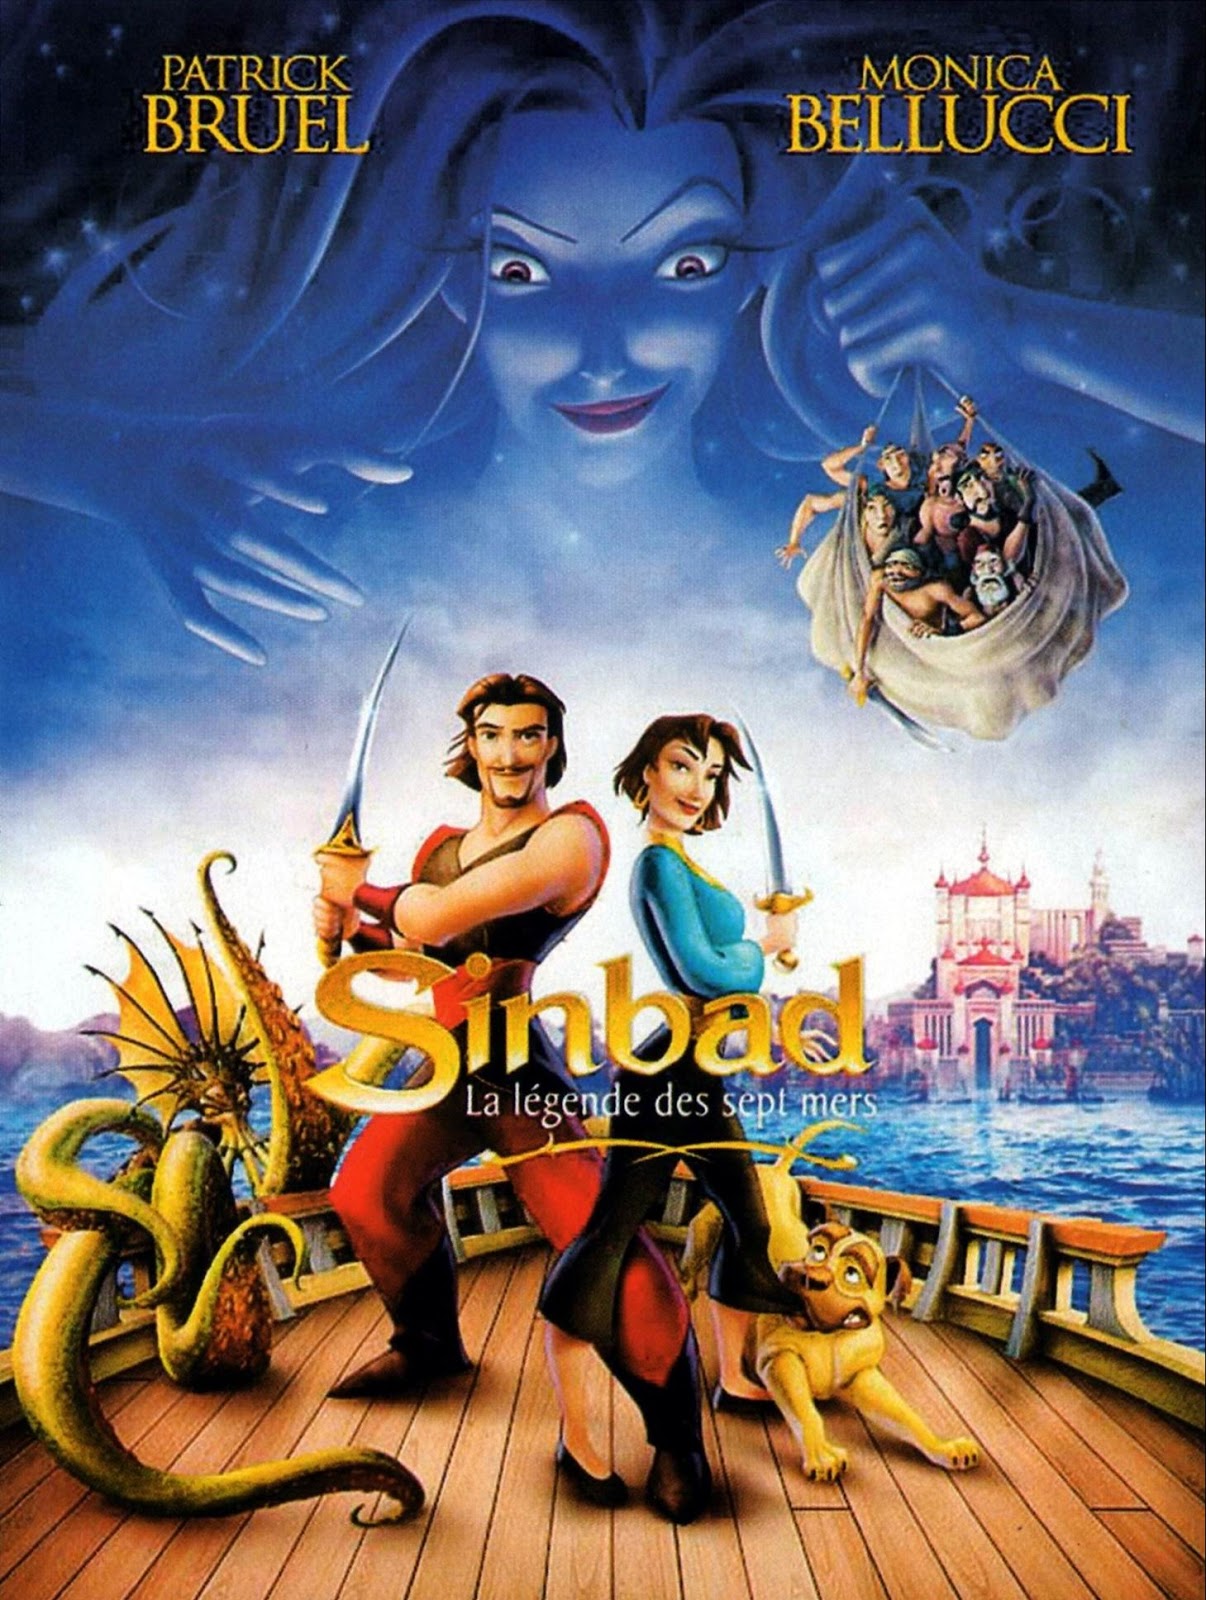 Affiches - Photos d'exploitation - Bandes annonces: Sinbad : La légende - Cast Of Sinbad Legend Of The Seven Seas